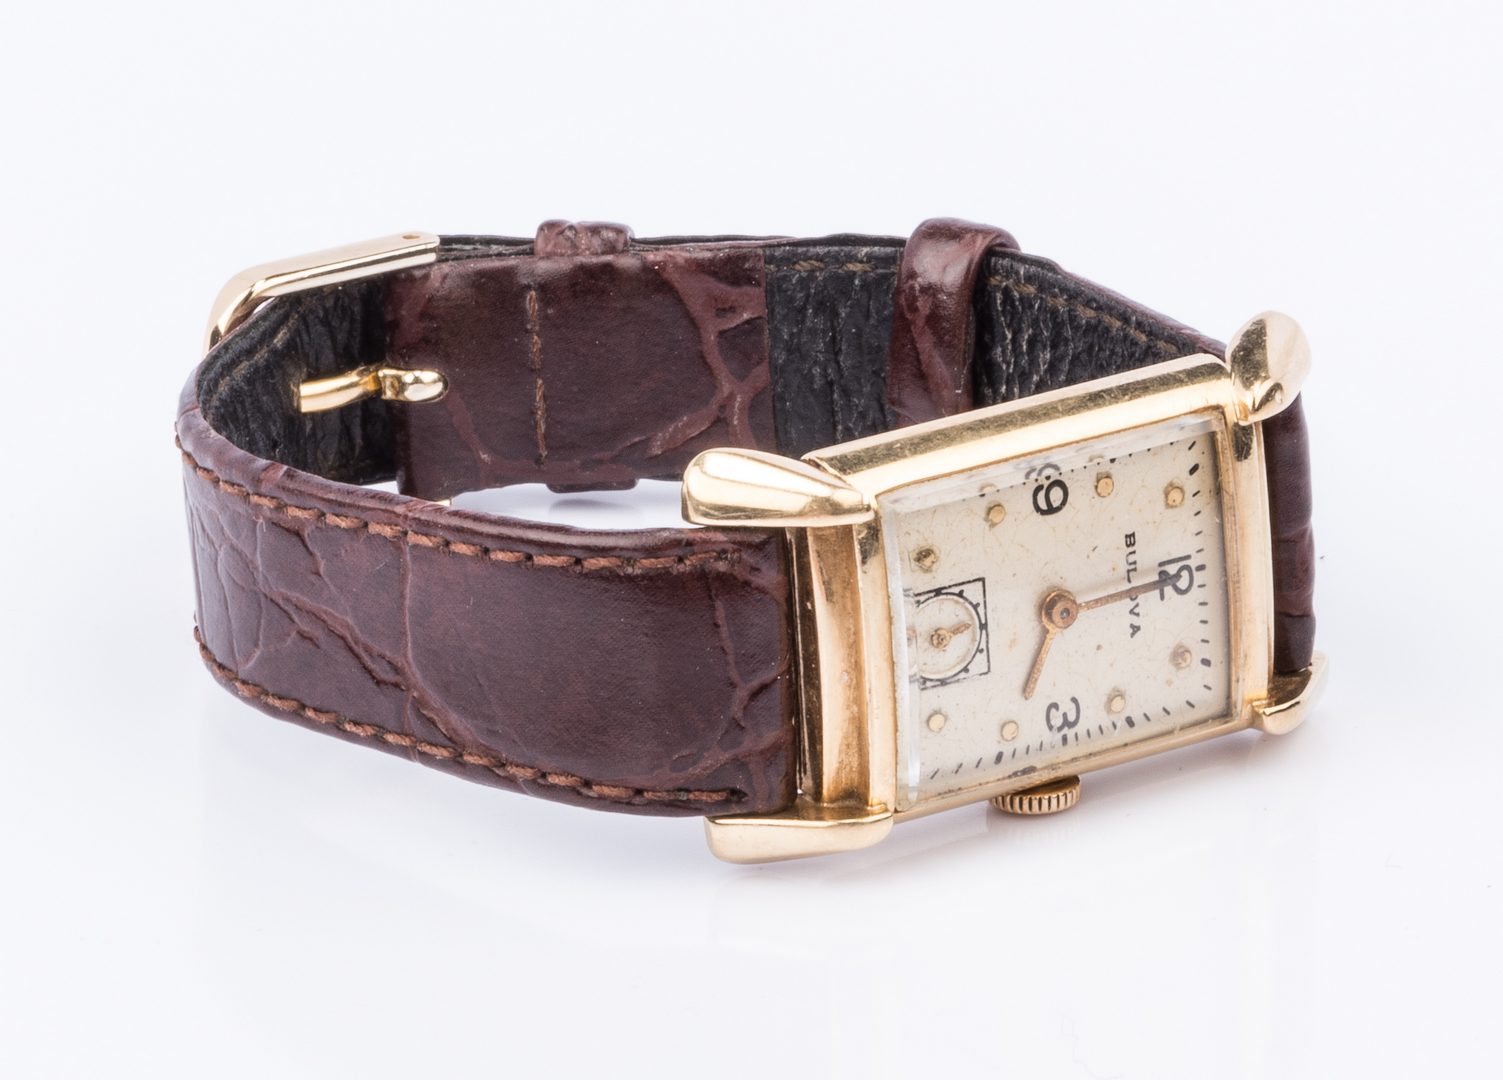 Lot 856: 14K Bulova Case Watch with leather strap